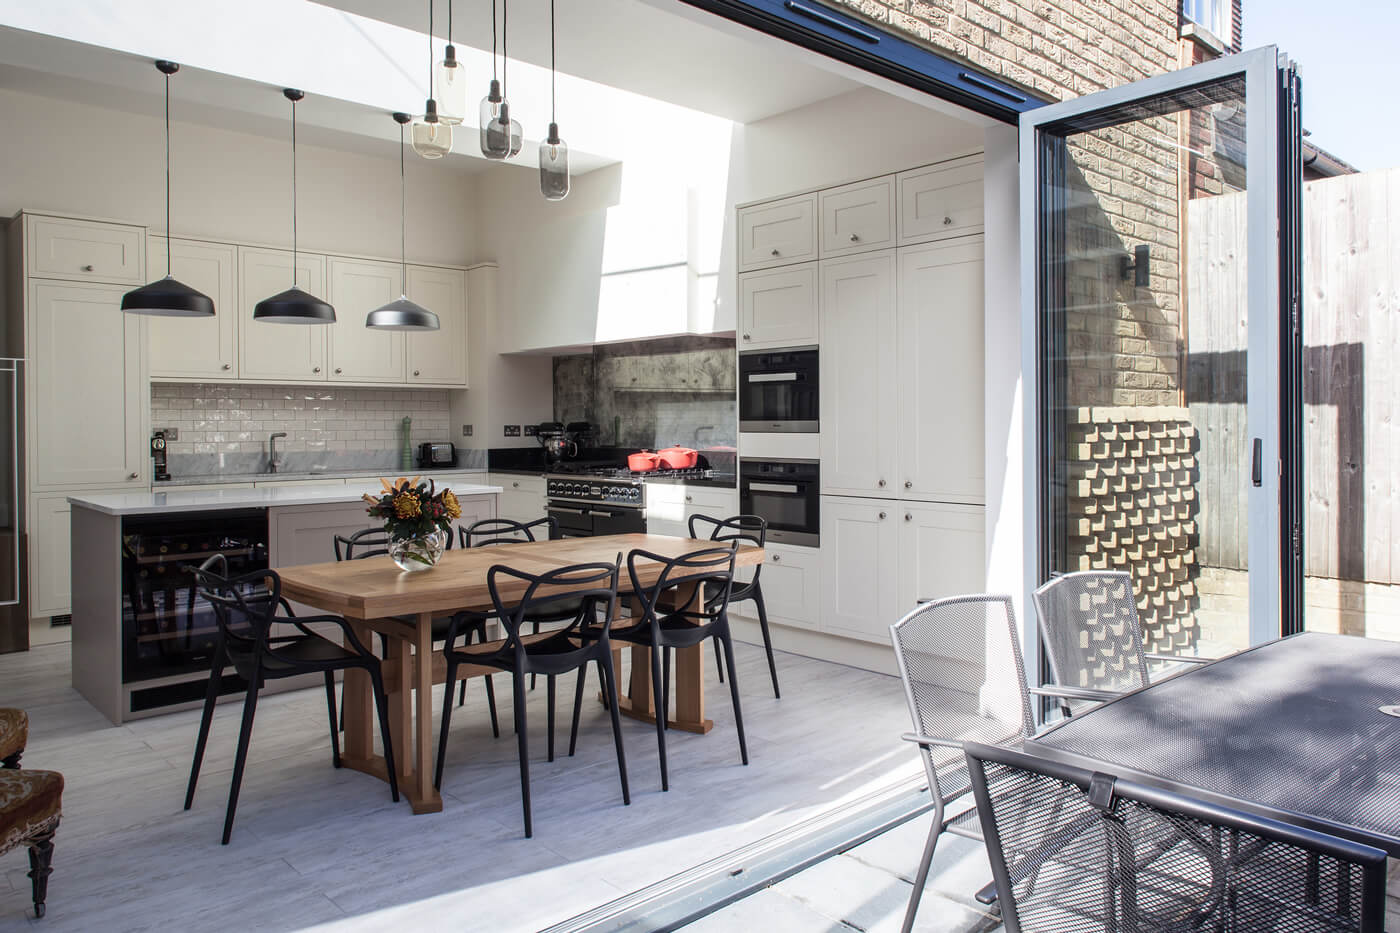 Hoe zorg je er met een dakraam voor dat een keukenaanbouw een lichte en ruimtelijke uitbreiding is van de leefruimte?